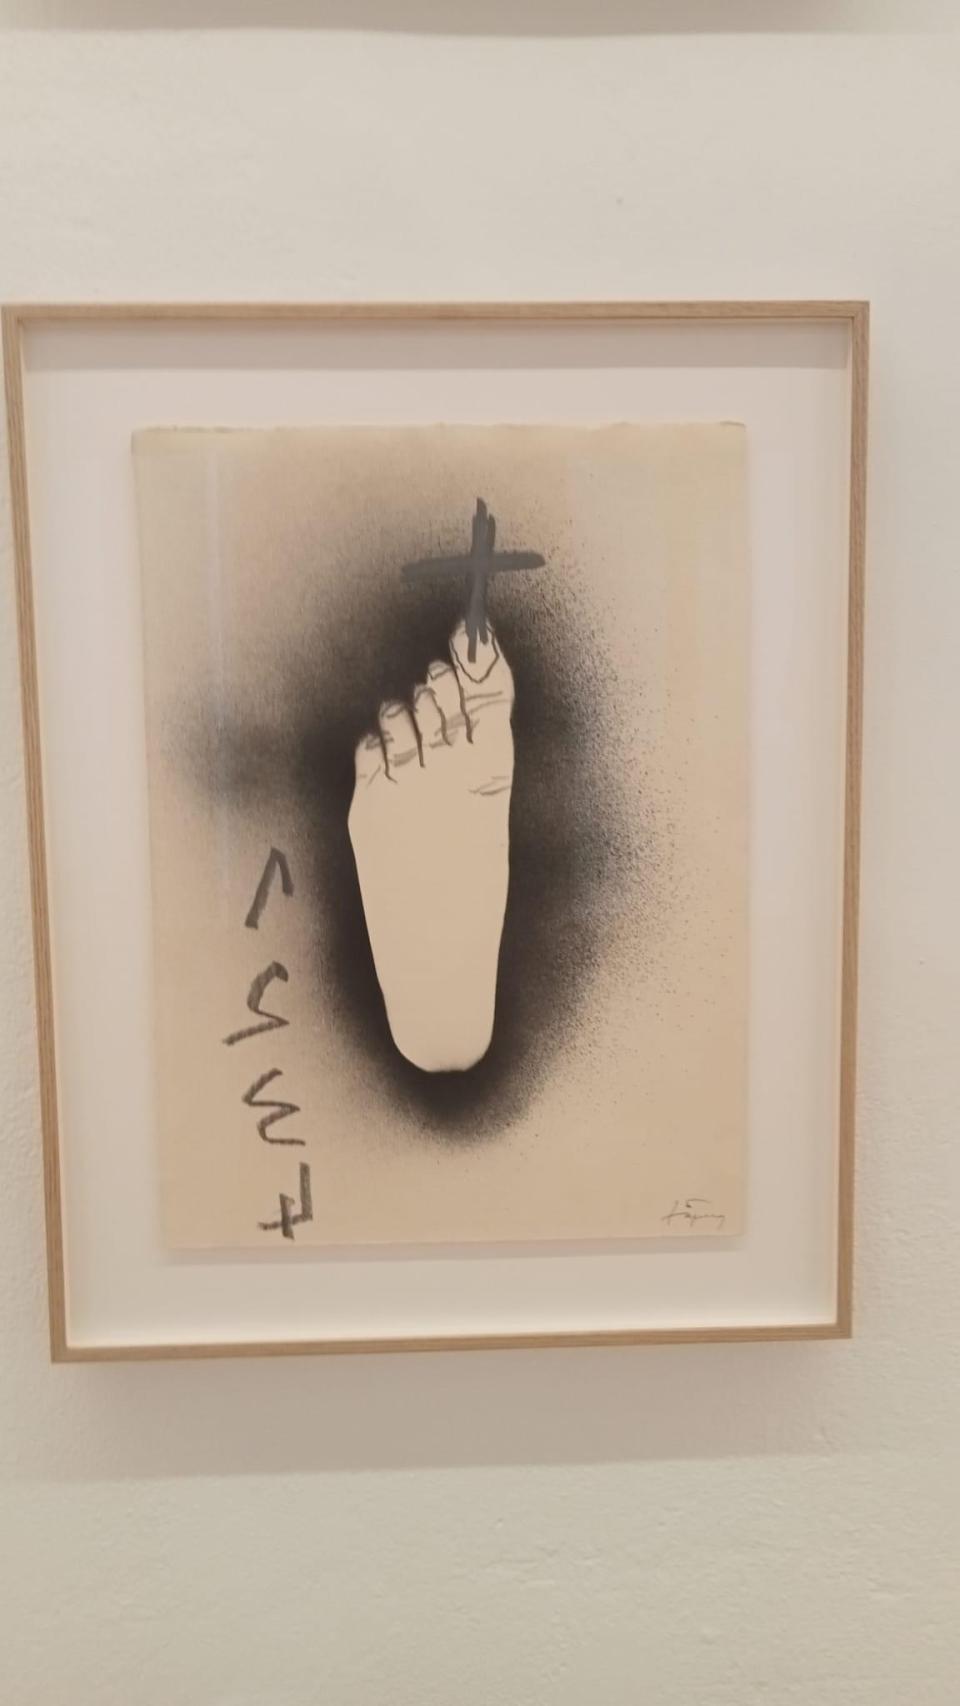 Una obra de Antoni Tàpies